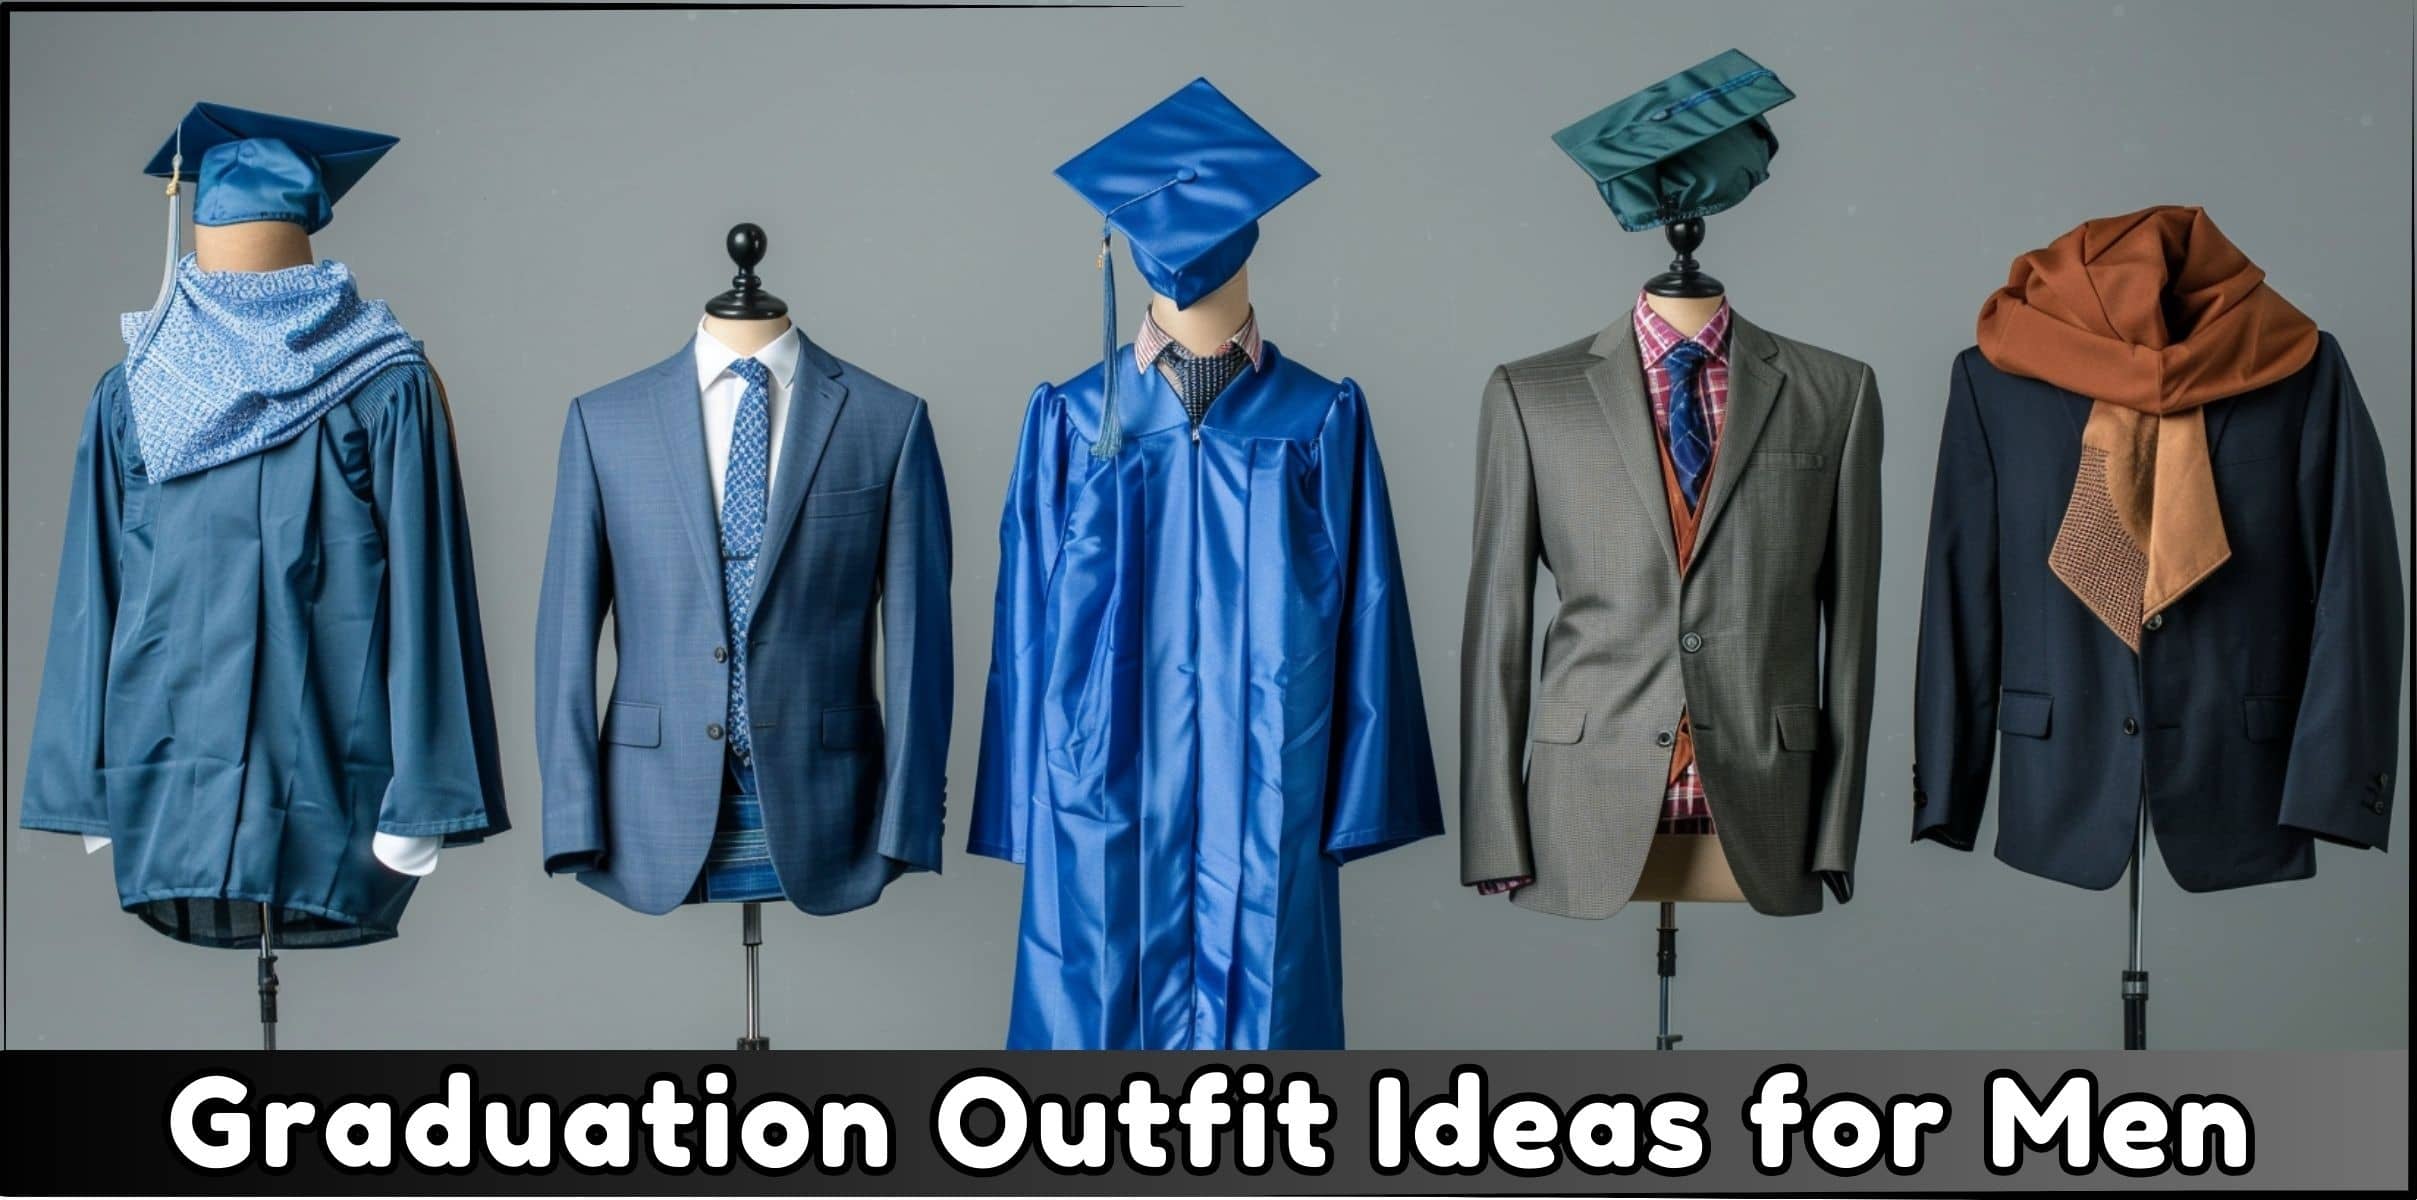 10 Graduation Outfit Ideas for Men